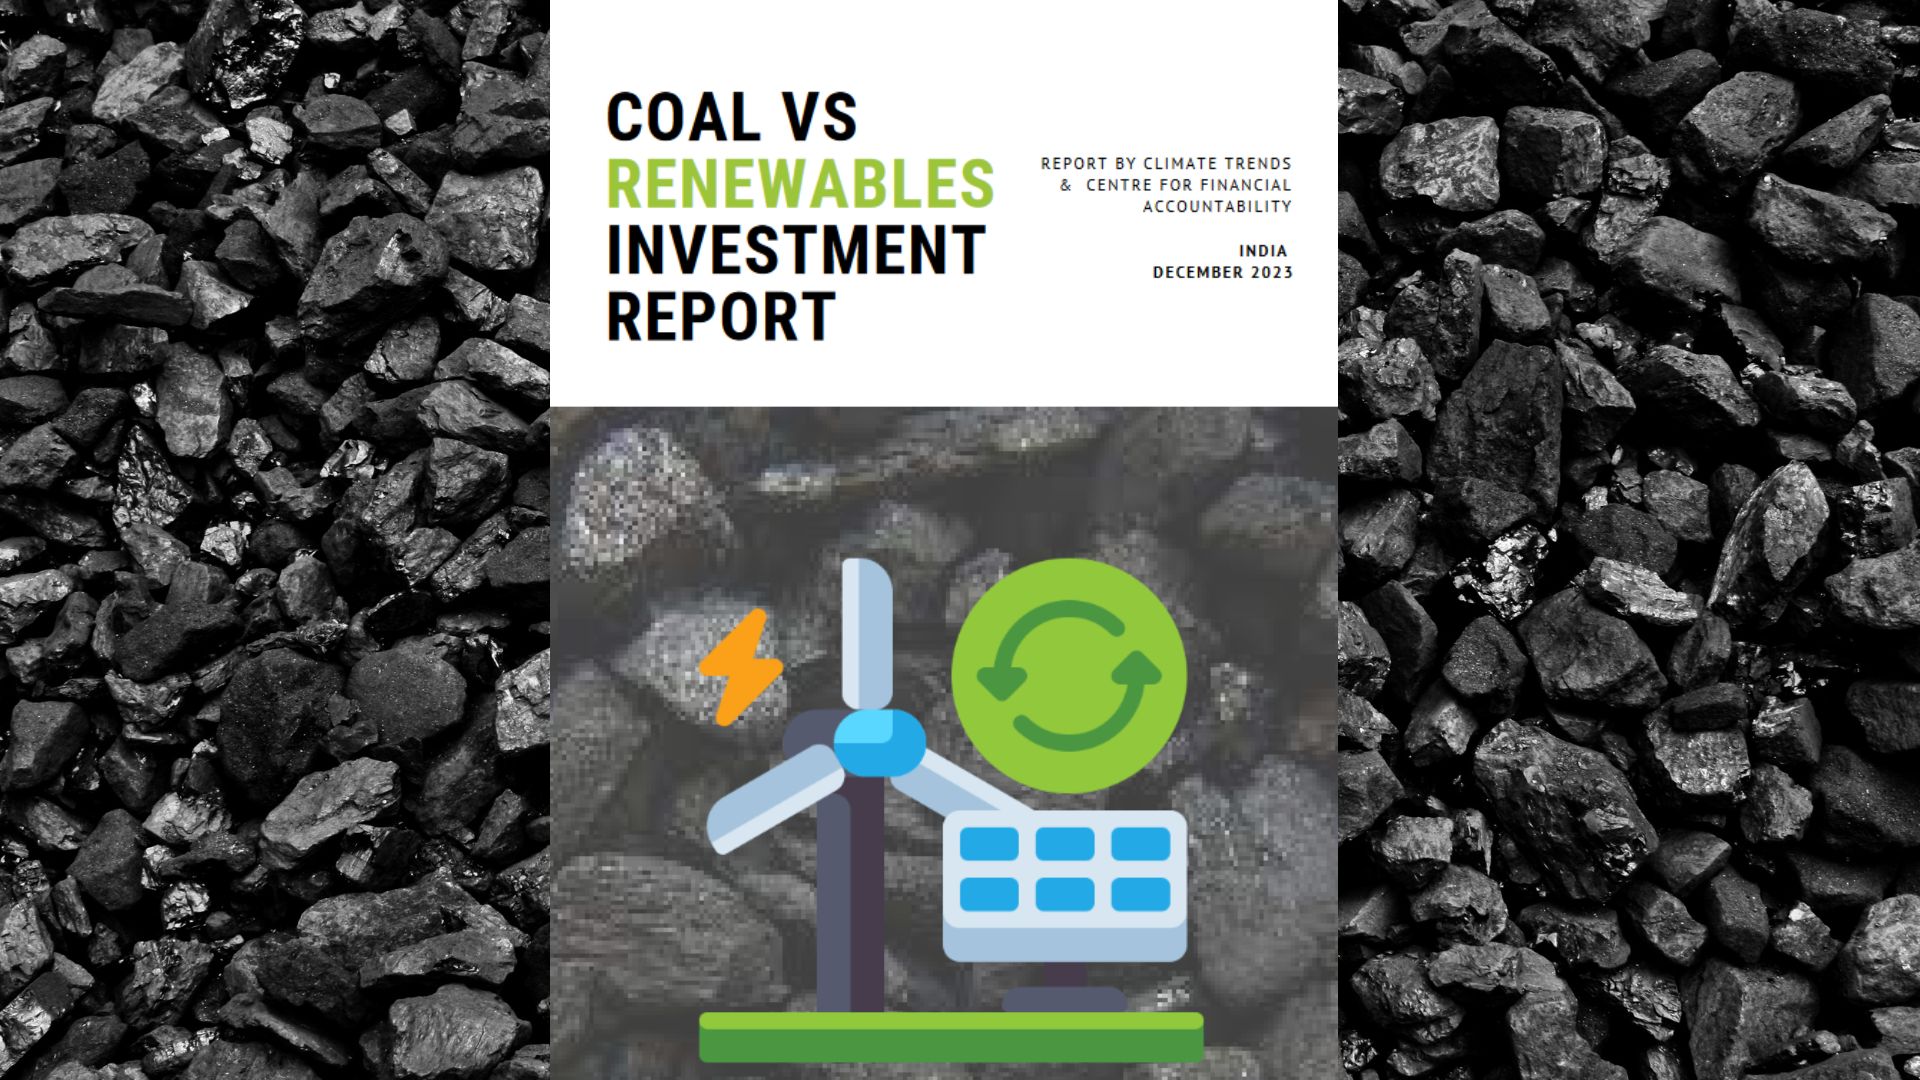 Coal vs Renewables Investment Report 2023